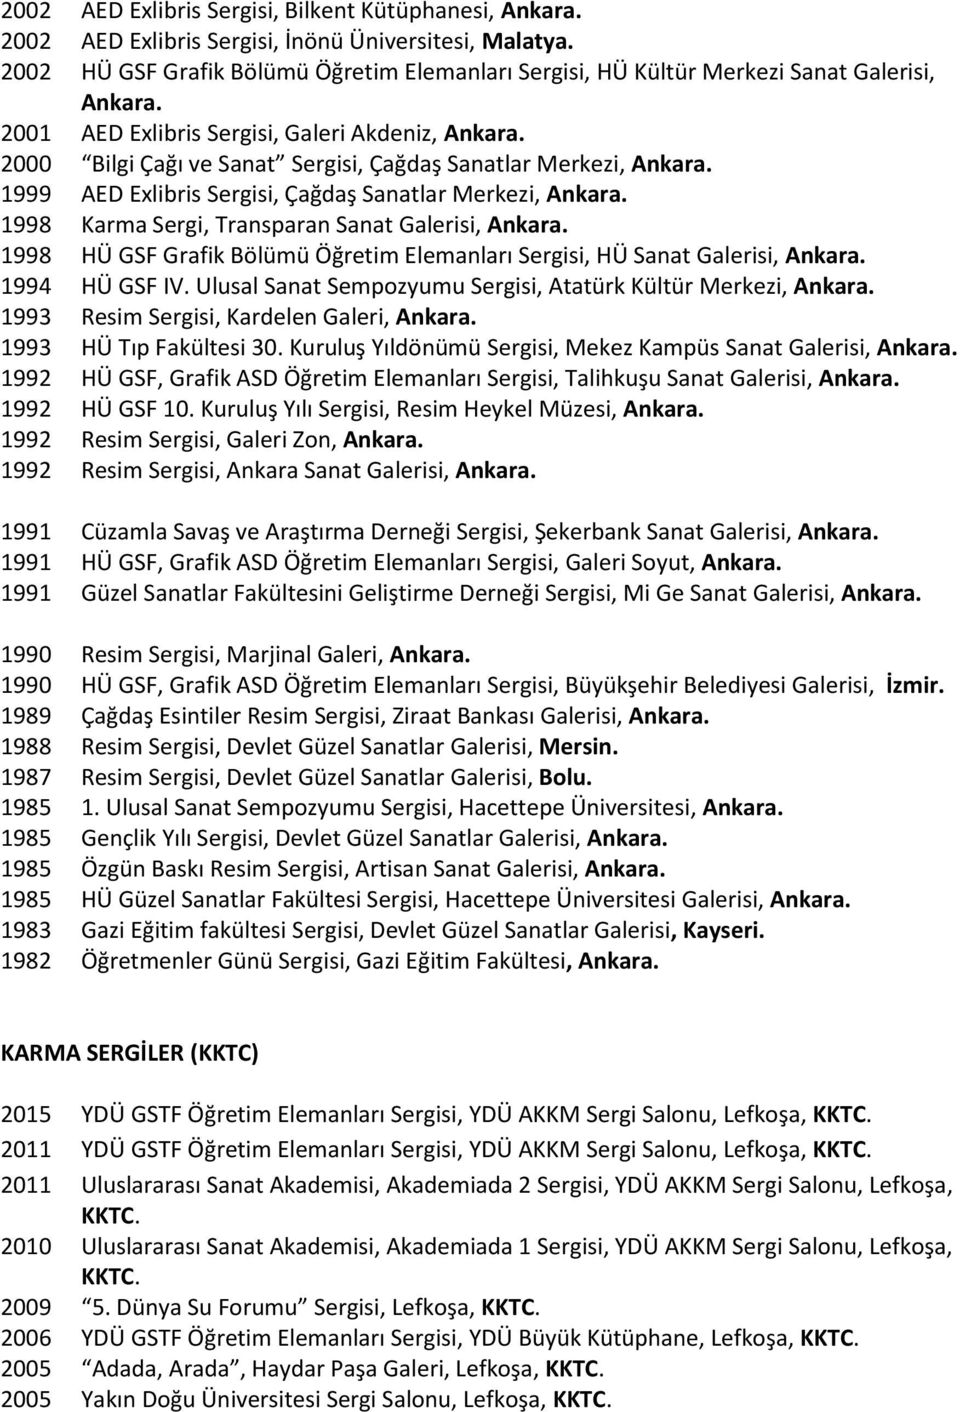 2000 Bilgi Çağı ve Sanat Sergisi, Çağdaş Sanatlar Merkezi, Ankara. 1999 AED Exlibris Sergisi, Çağdaş Sanatlar Merkezi, Ankara. 1998 Karma Sergi, Transparan Sanat Galerisi, Ankara.